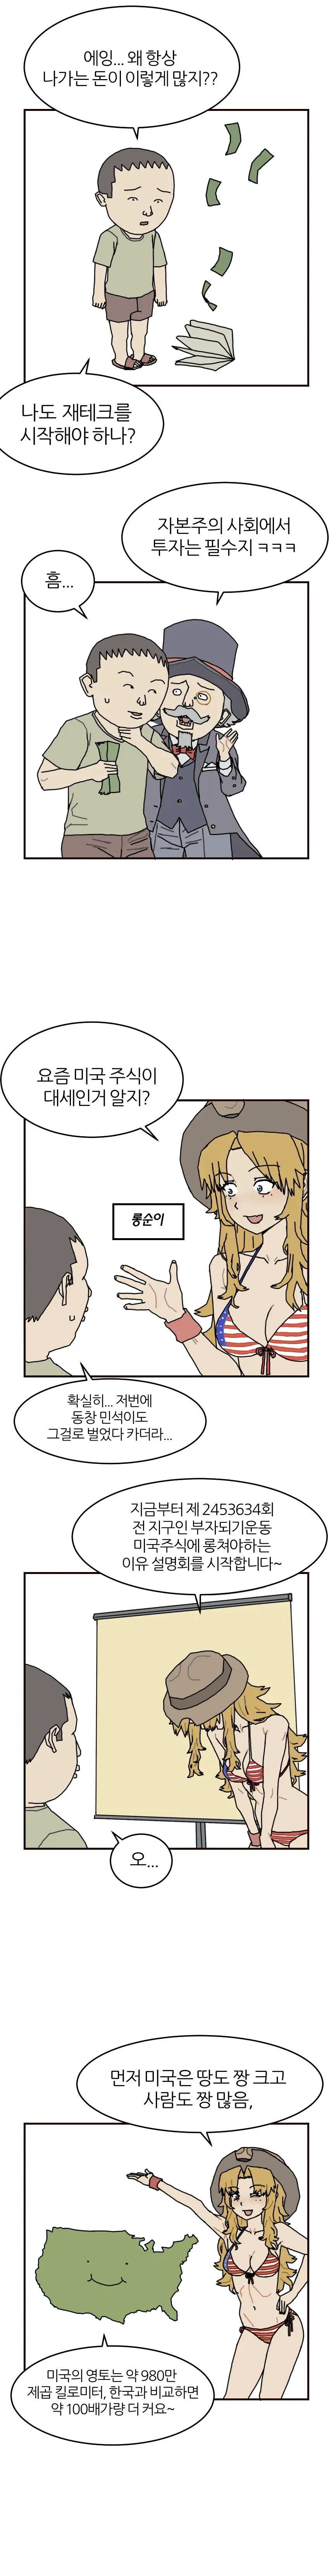 미국 주식에 투자해보는 만화.manhwa | mbong.kr 엠봉